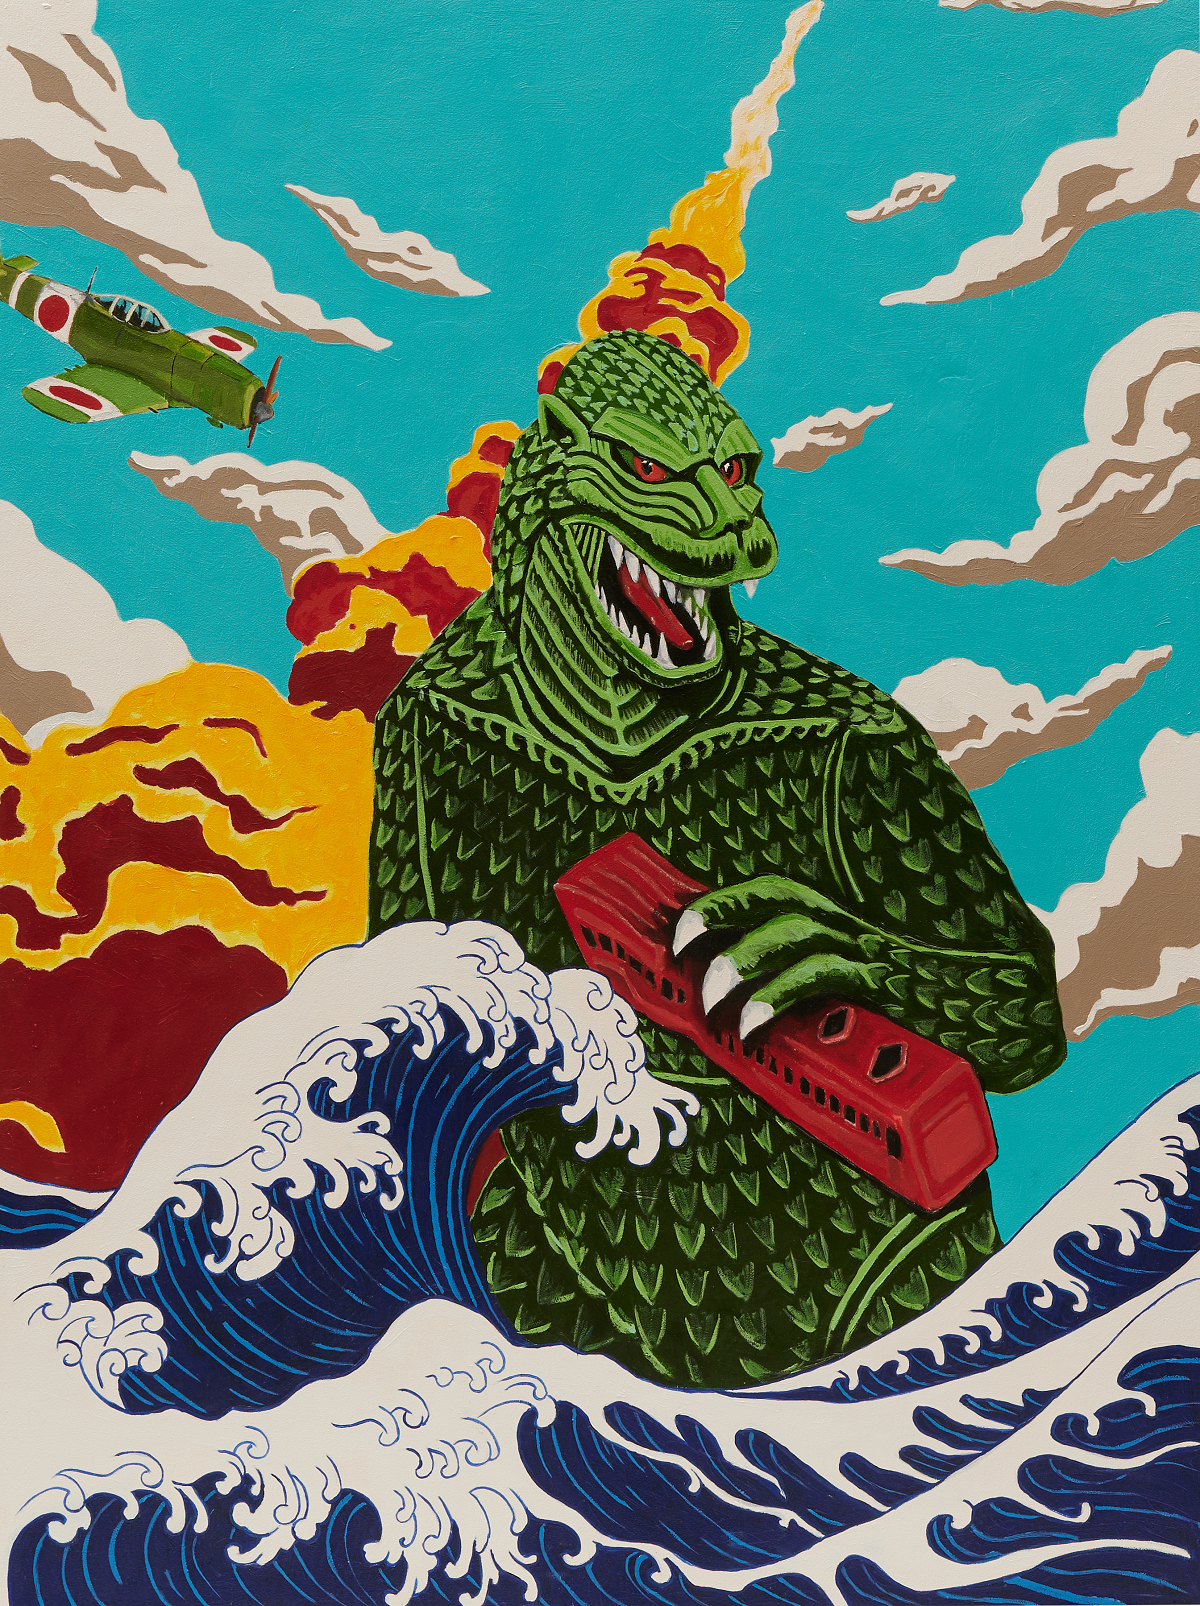 Godzilla rules the big waves of Kanagawa